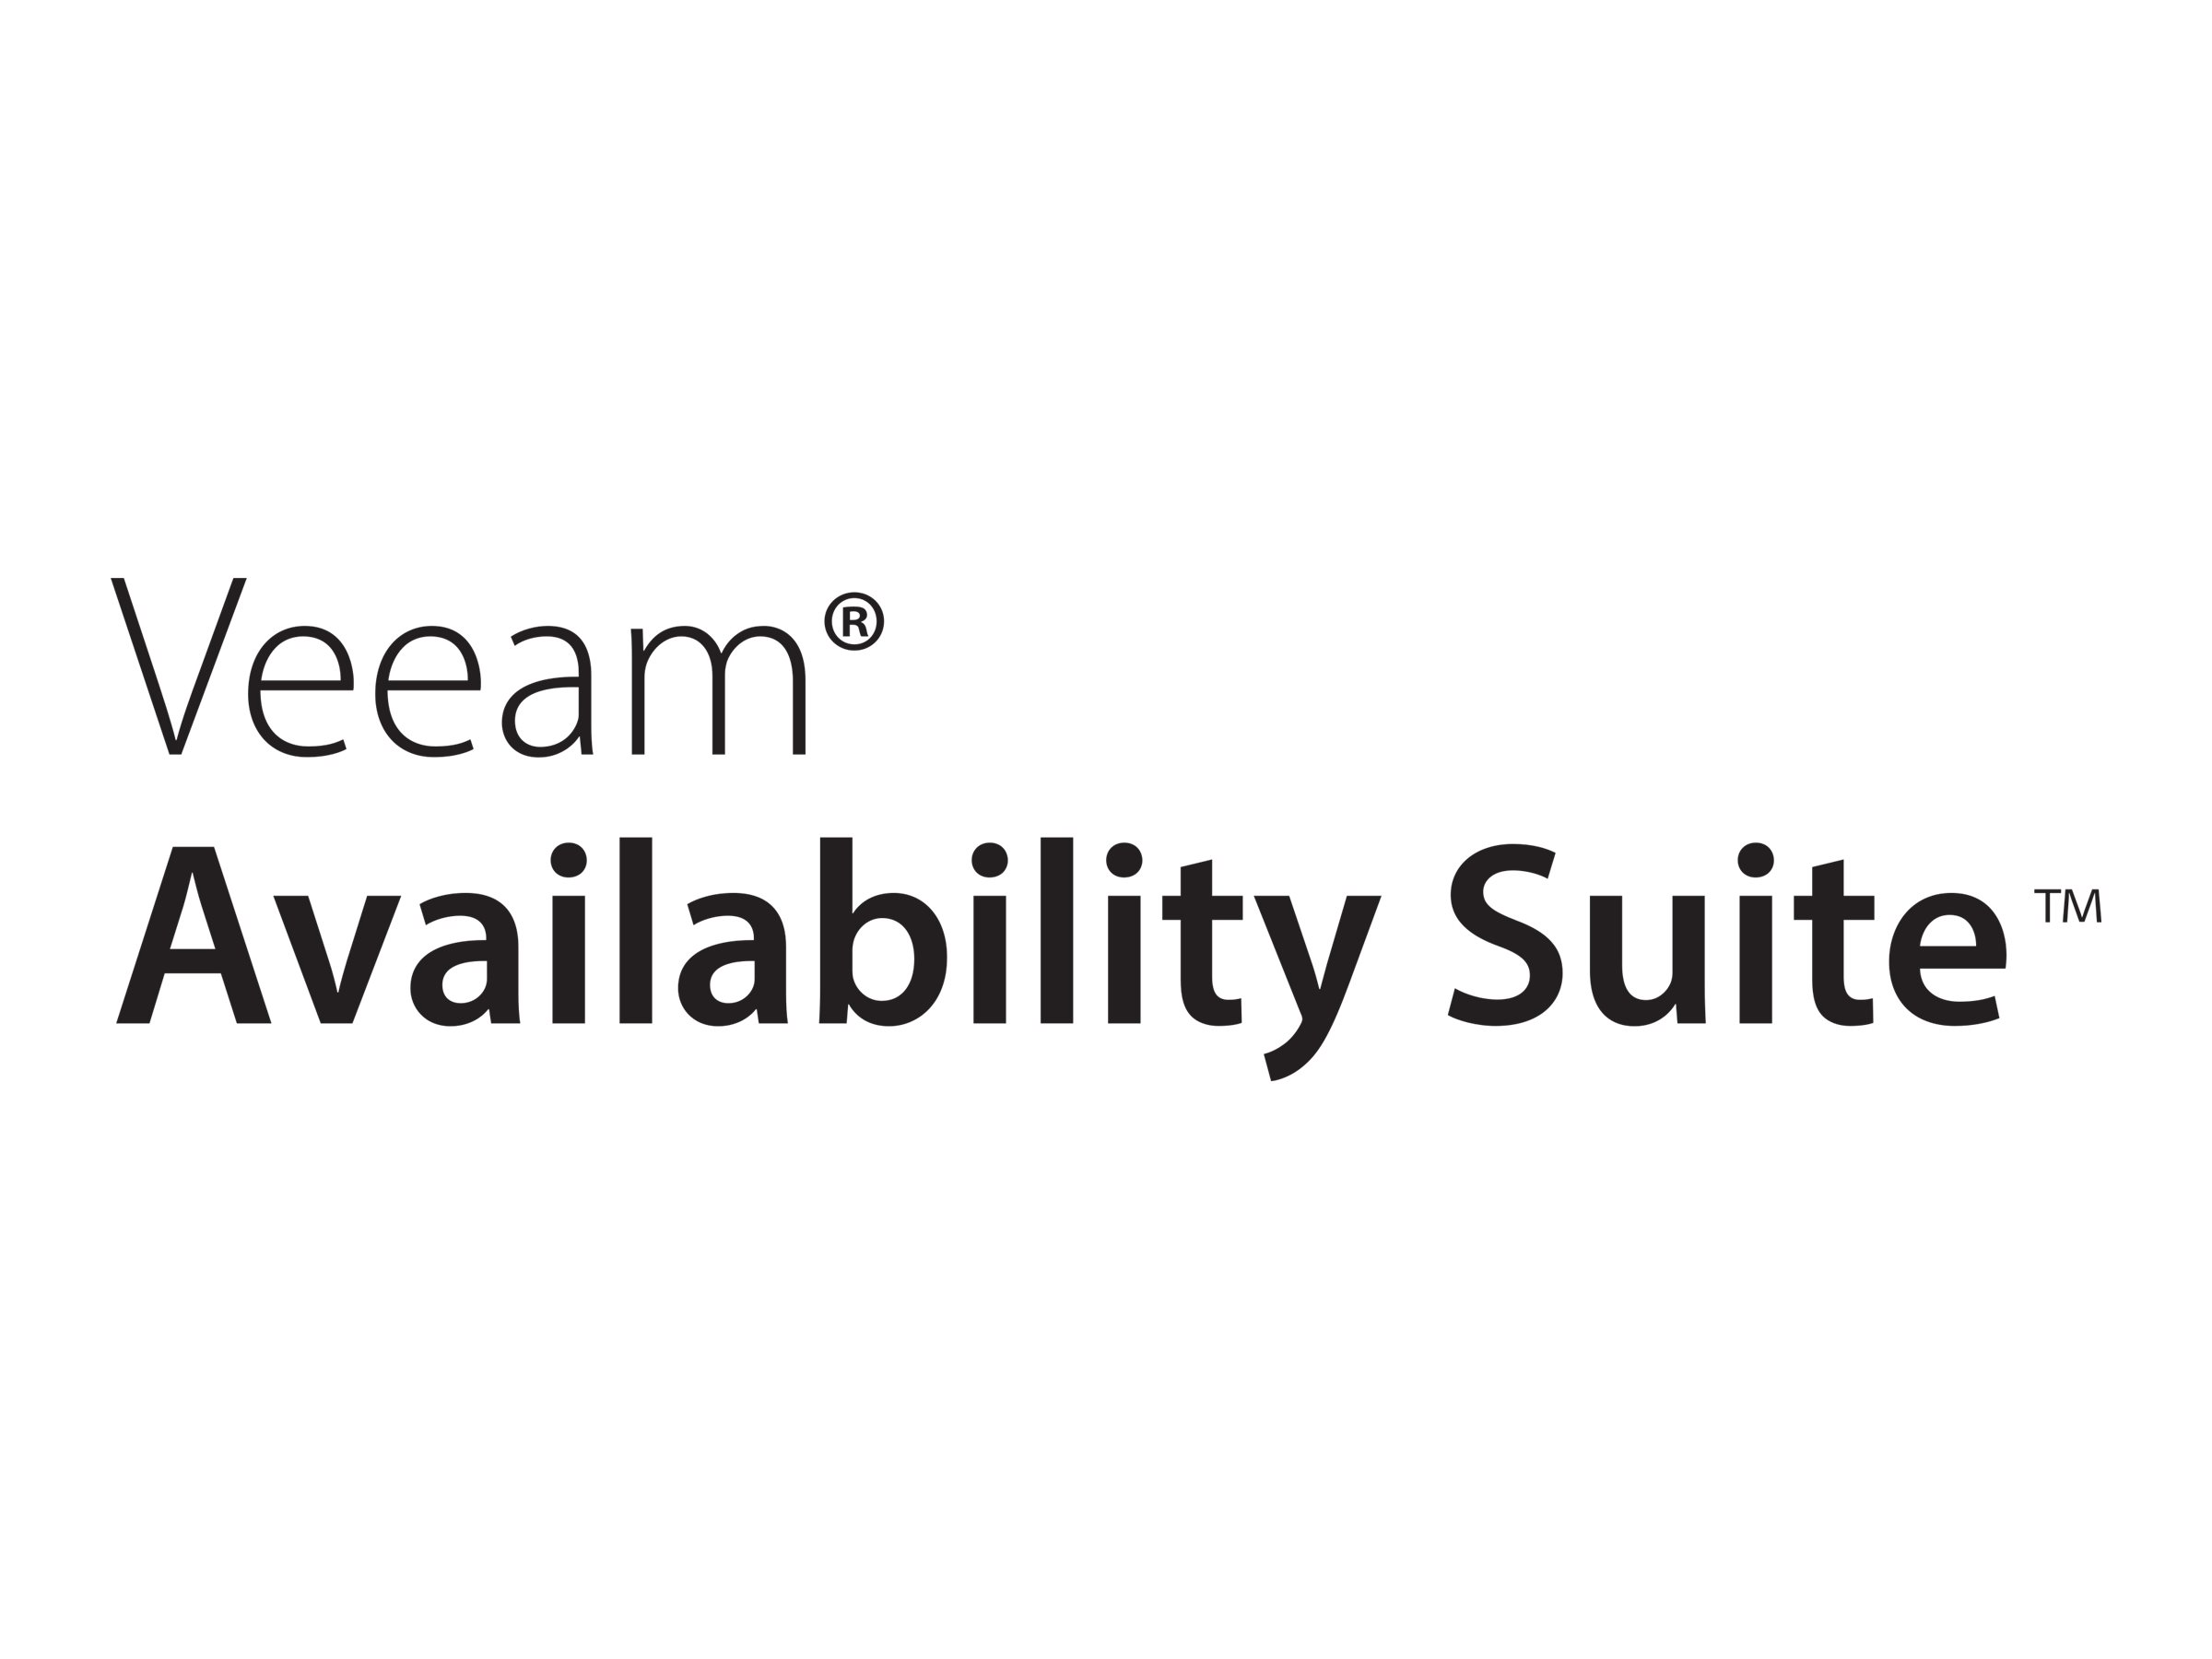 Veeam Availability Suite - Lizenz mit Vorauszahlung (4 Jahre) + Production Support - 1 Anschluss - akademisch